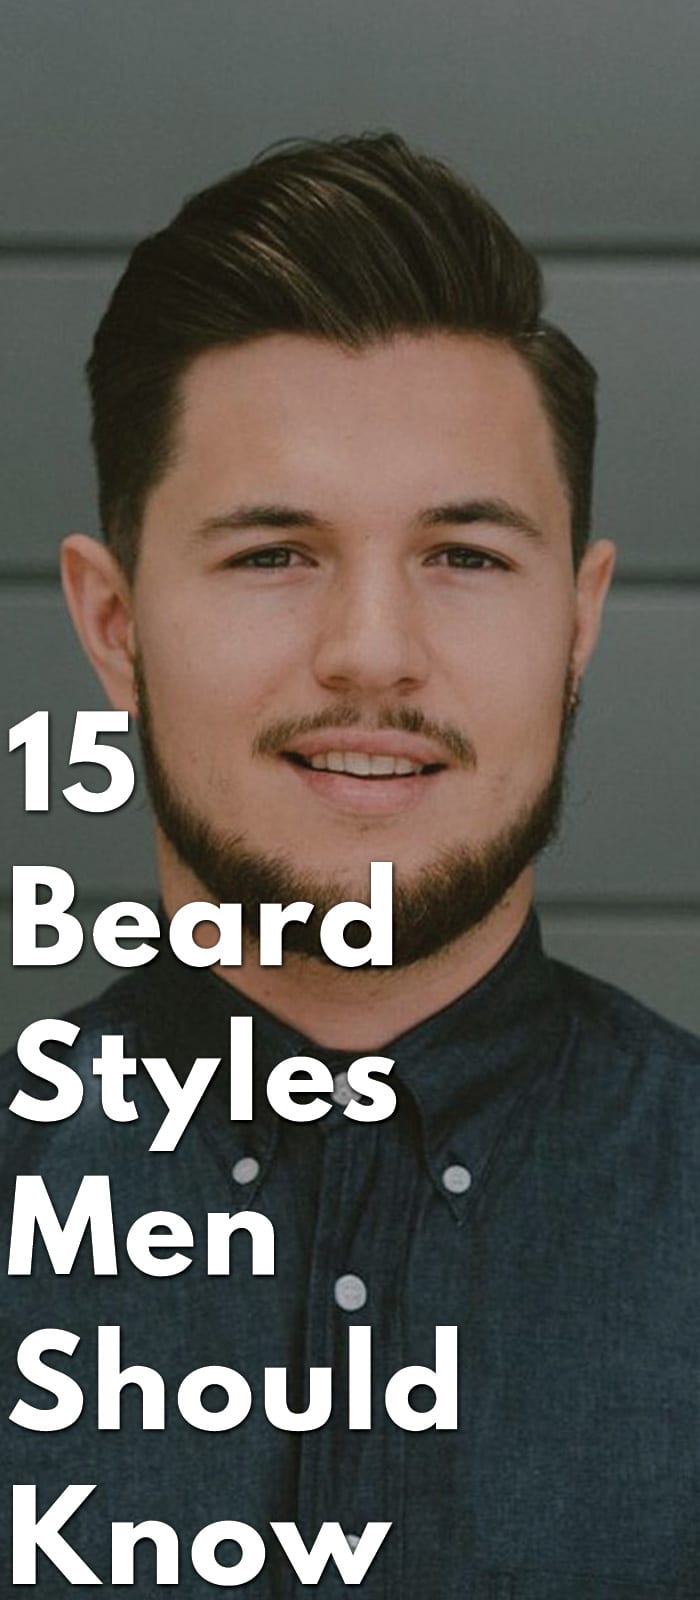 15-Beard-Styles-Men-Should-Know-.